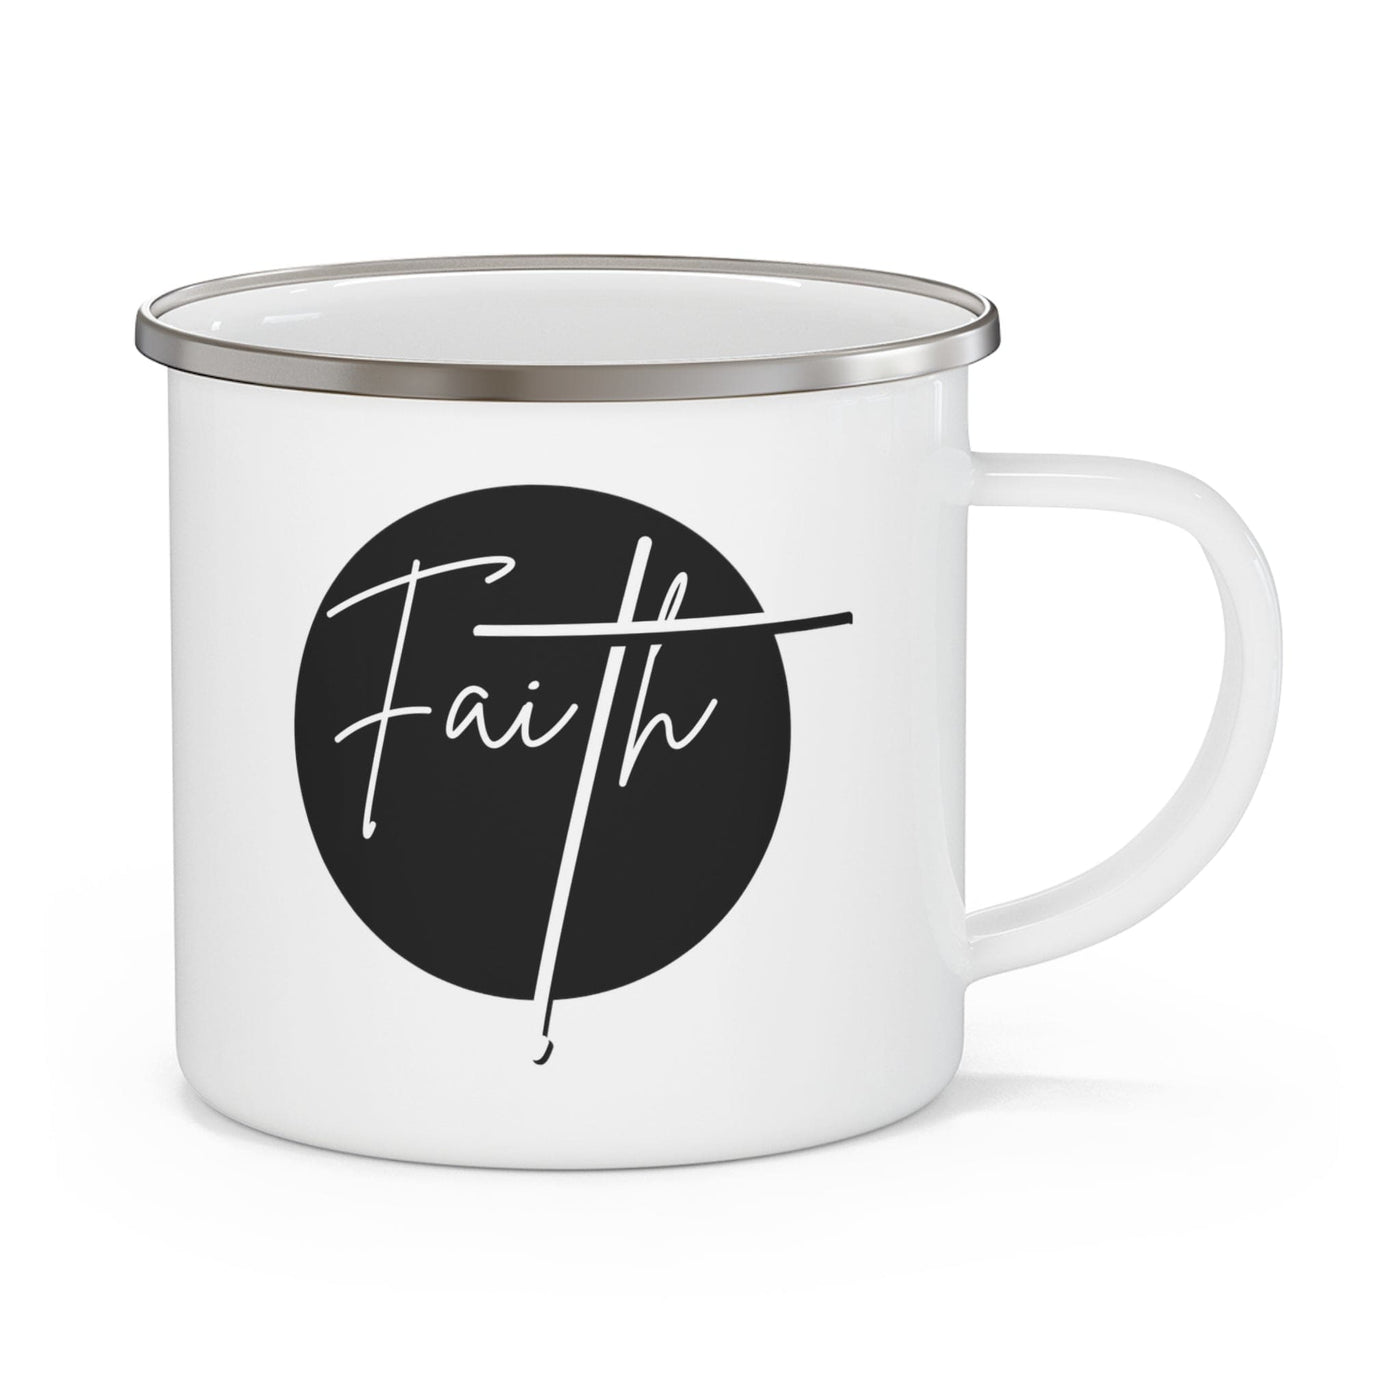 Enamel Camping Mug Faith - Christian Affirmation Black And White Decorative